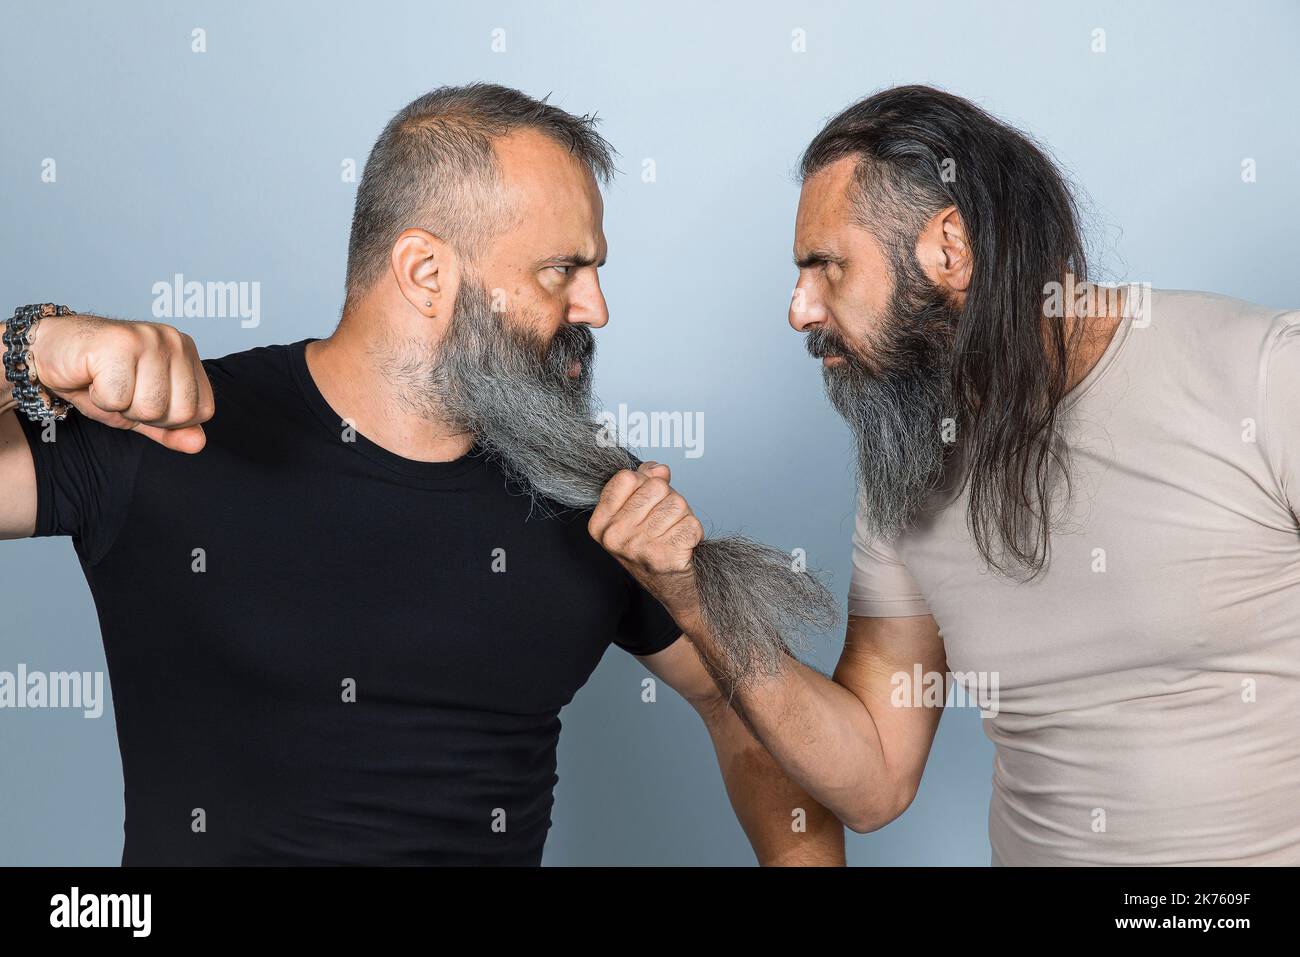 uomini con barba lunga in atteggiamento aggressivo. foto da studio Foto Stock